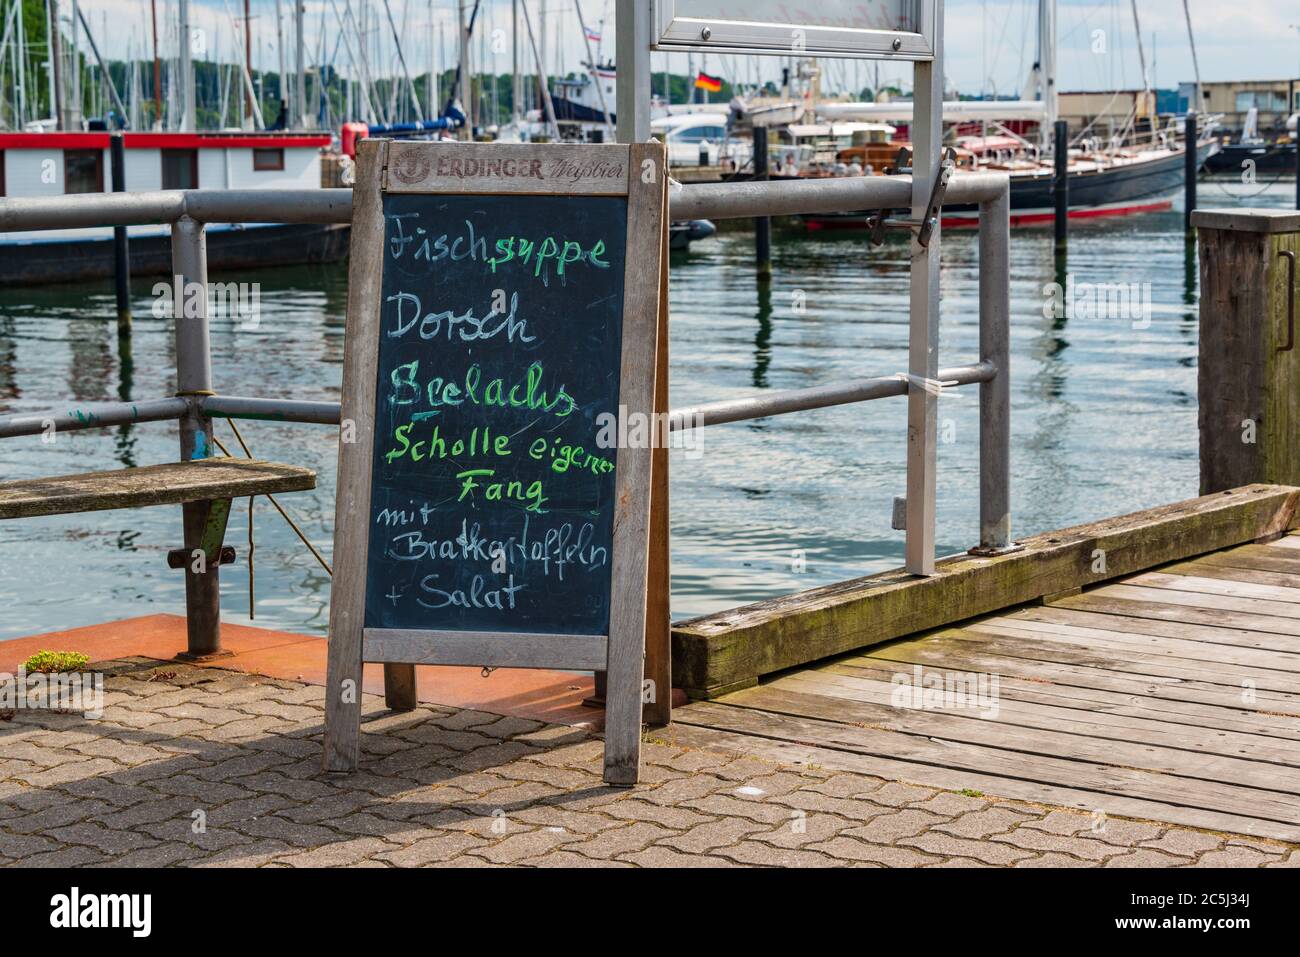 Ein Schild im Hafen Fischsuppe, Dorsch, Seelachs, Scholle aus eigenem Fang mit Bratkartoffeln und Salat Stock Photo